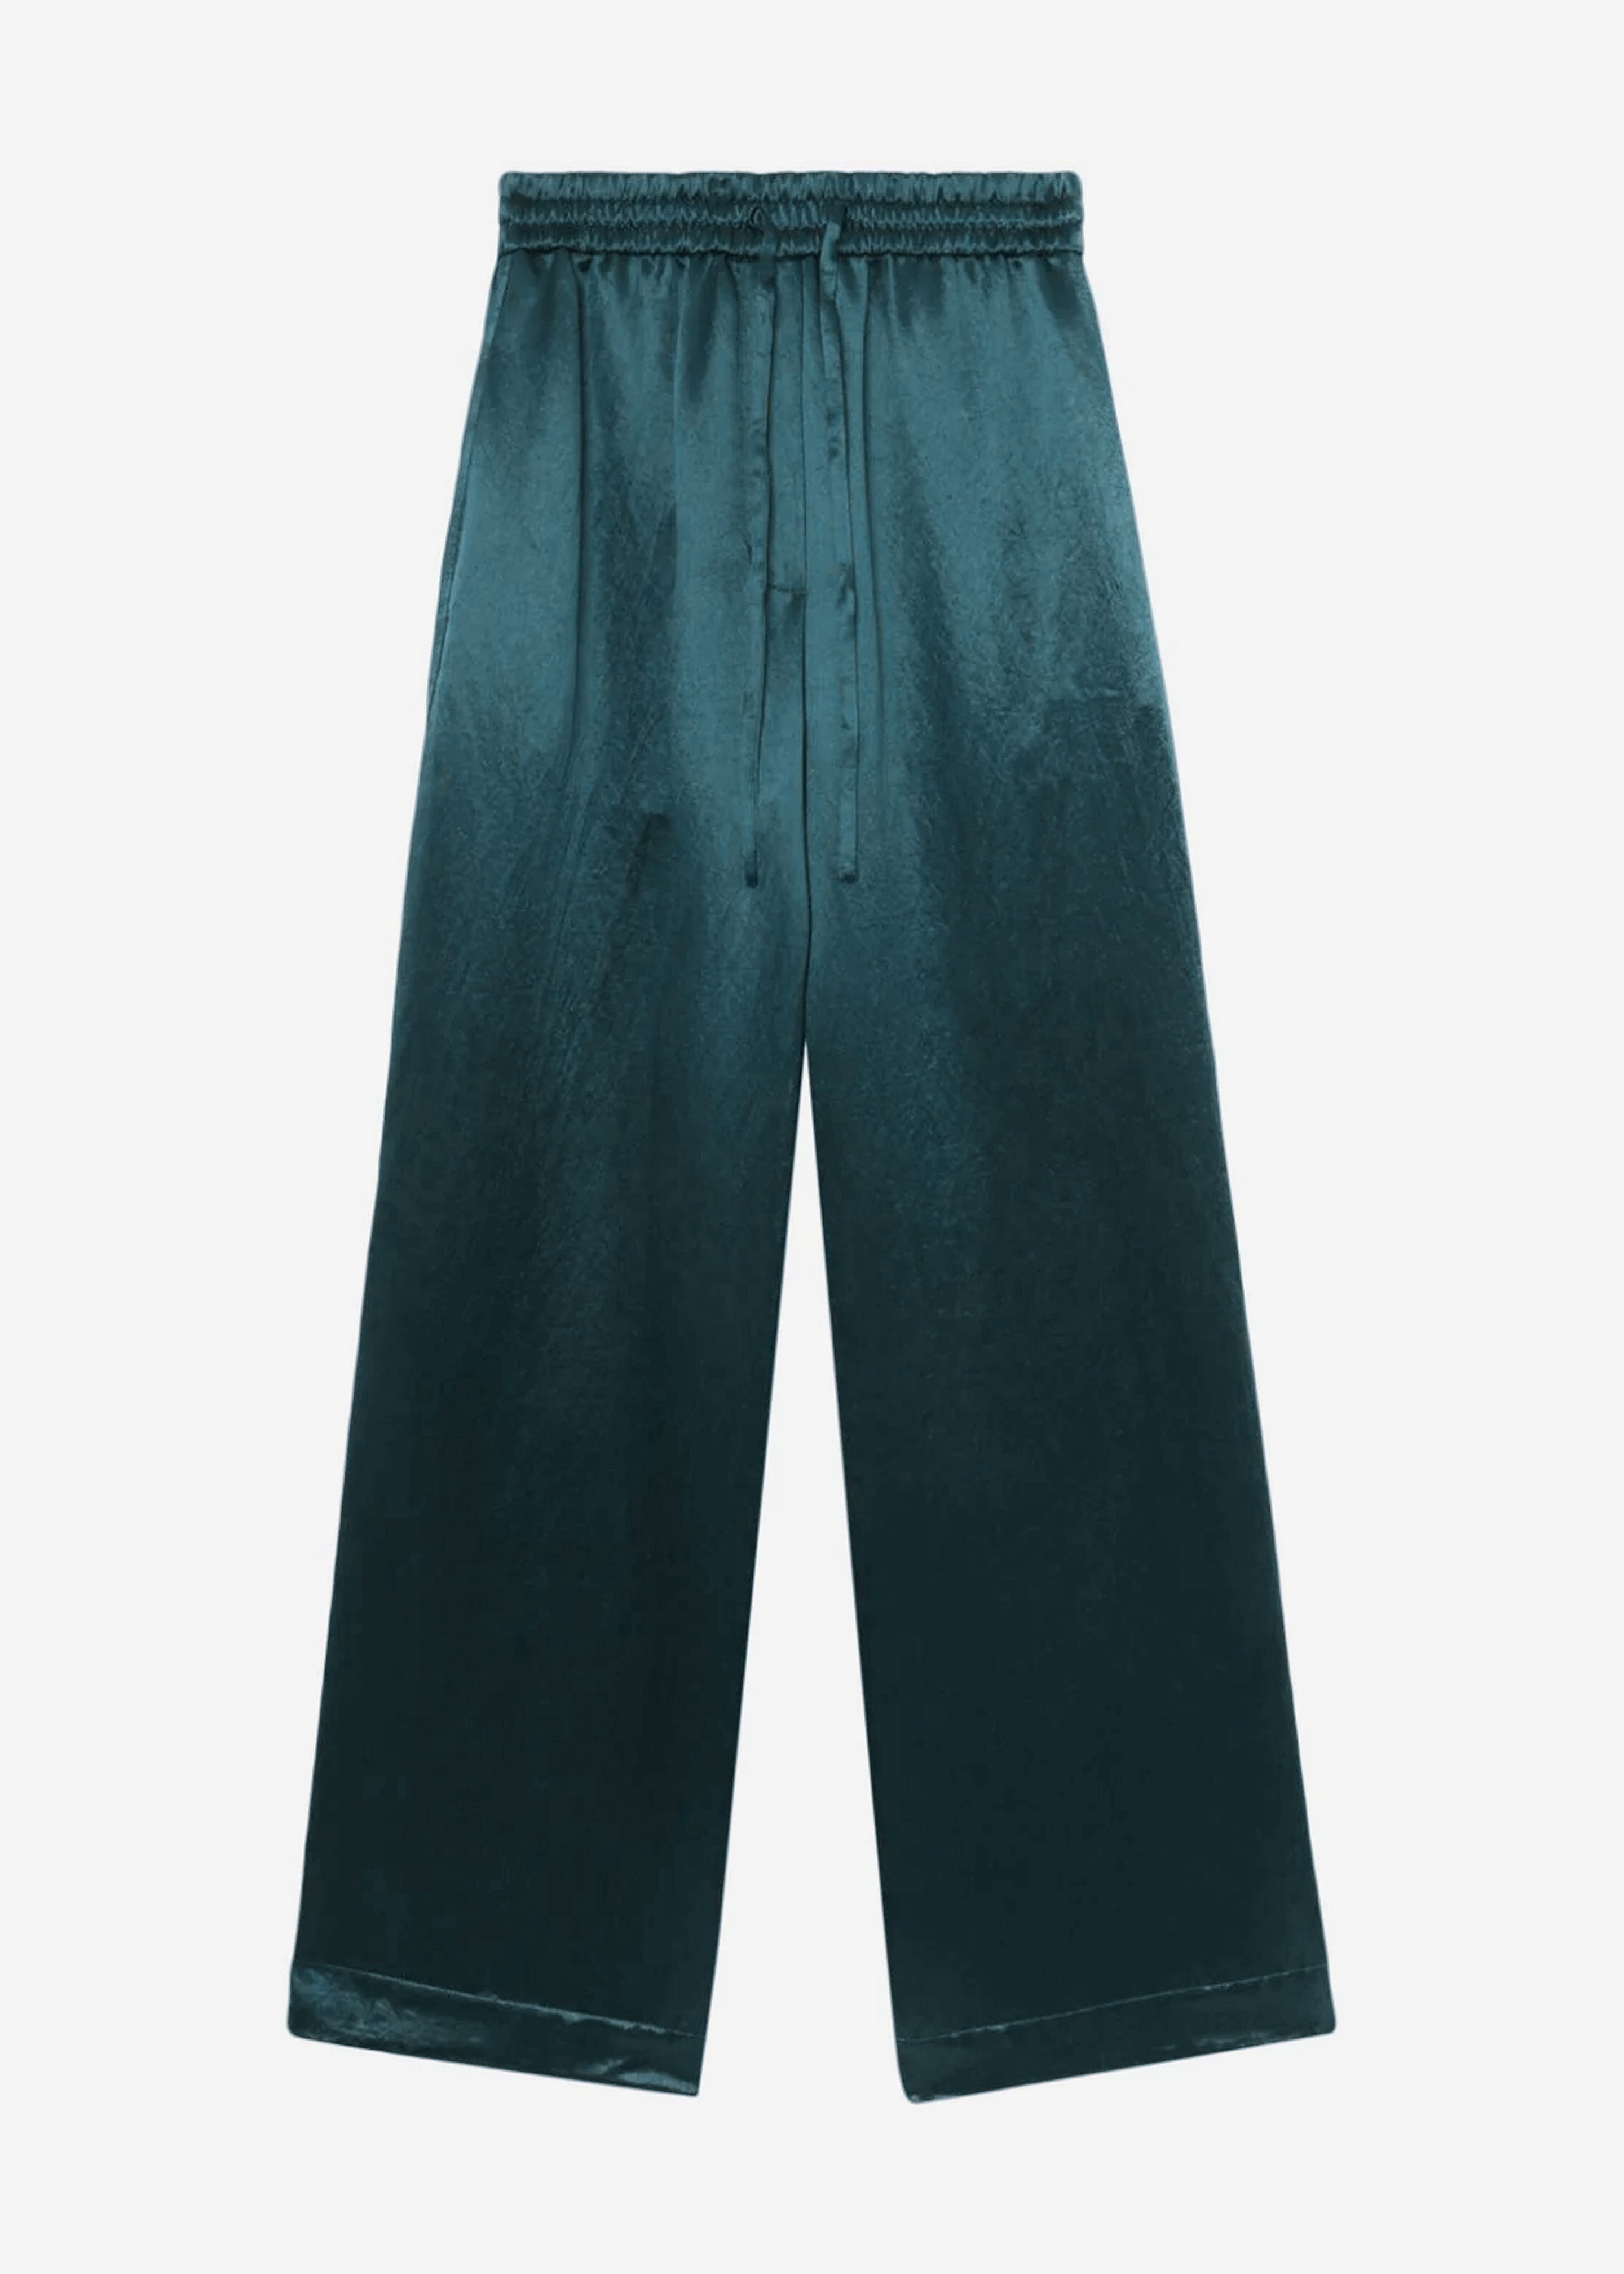 3.1 Phillip Lim Pajama Trousers - Deep Ocean - 8